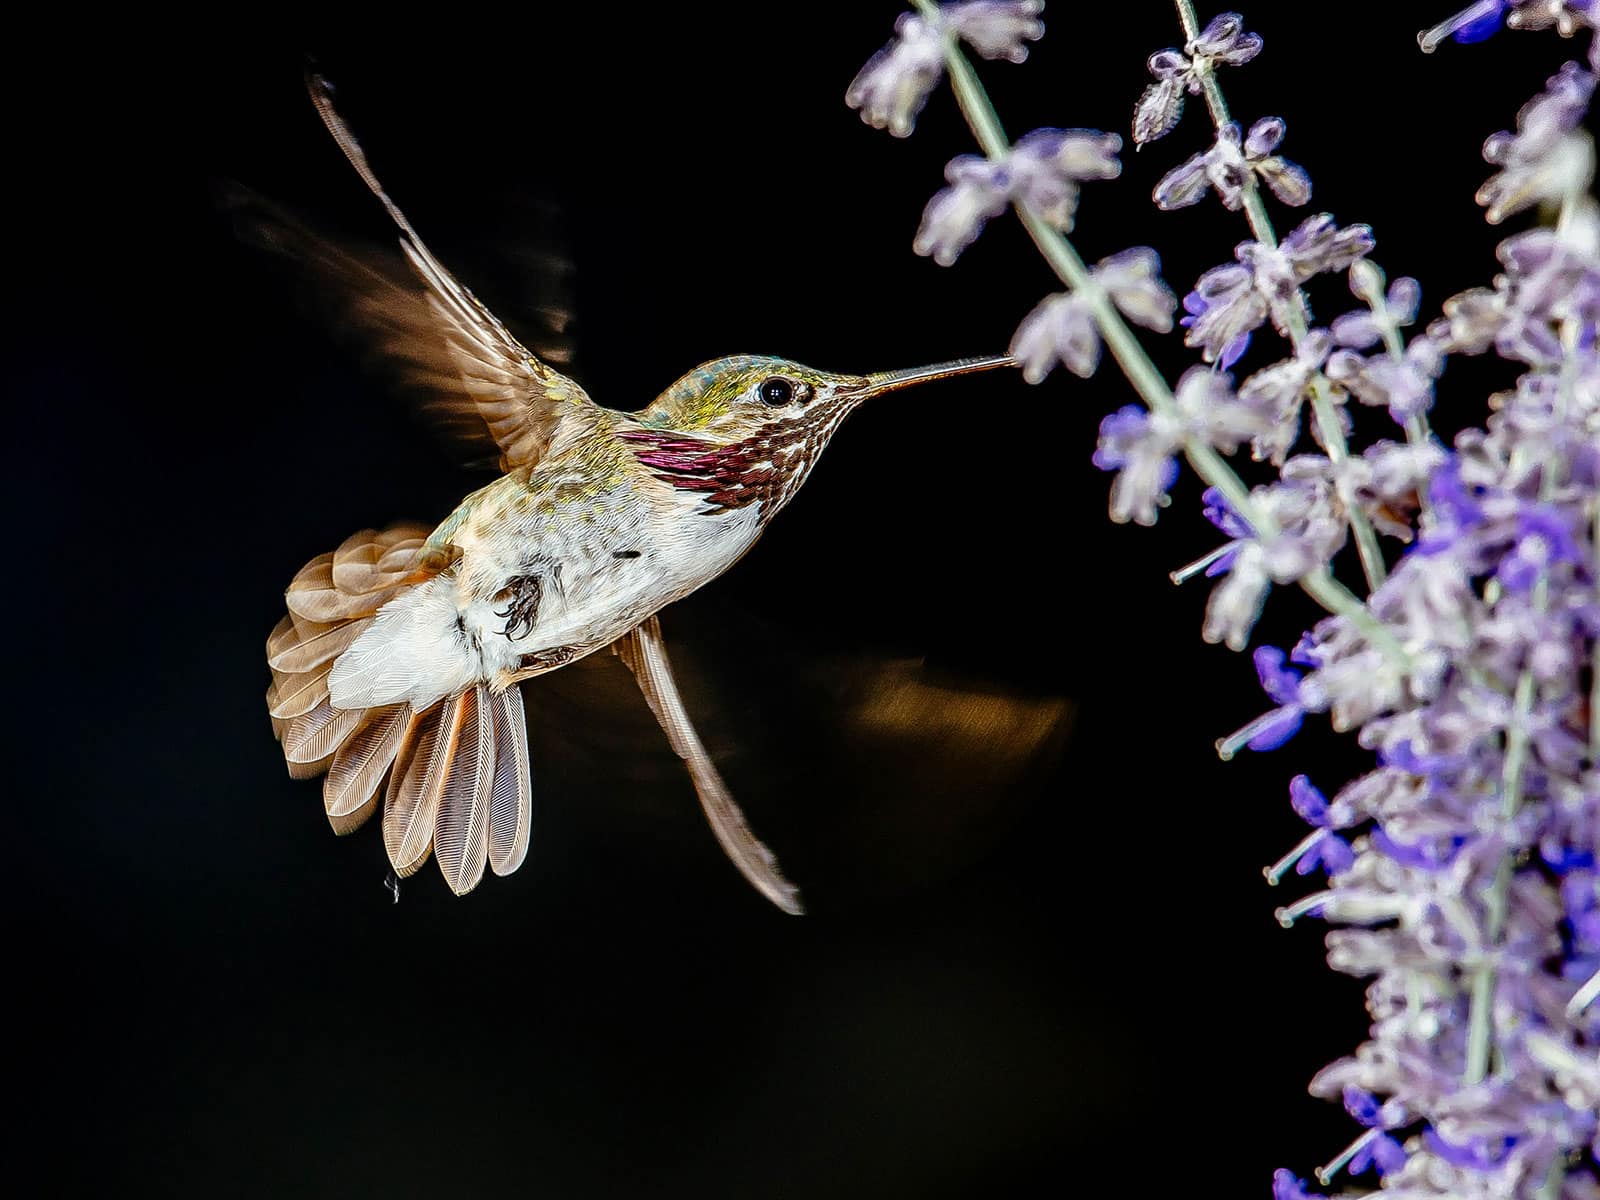 Calliope hummingbird feeding on purple flower spike